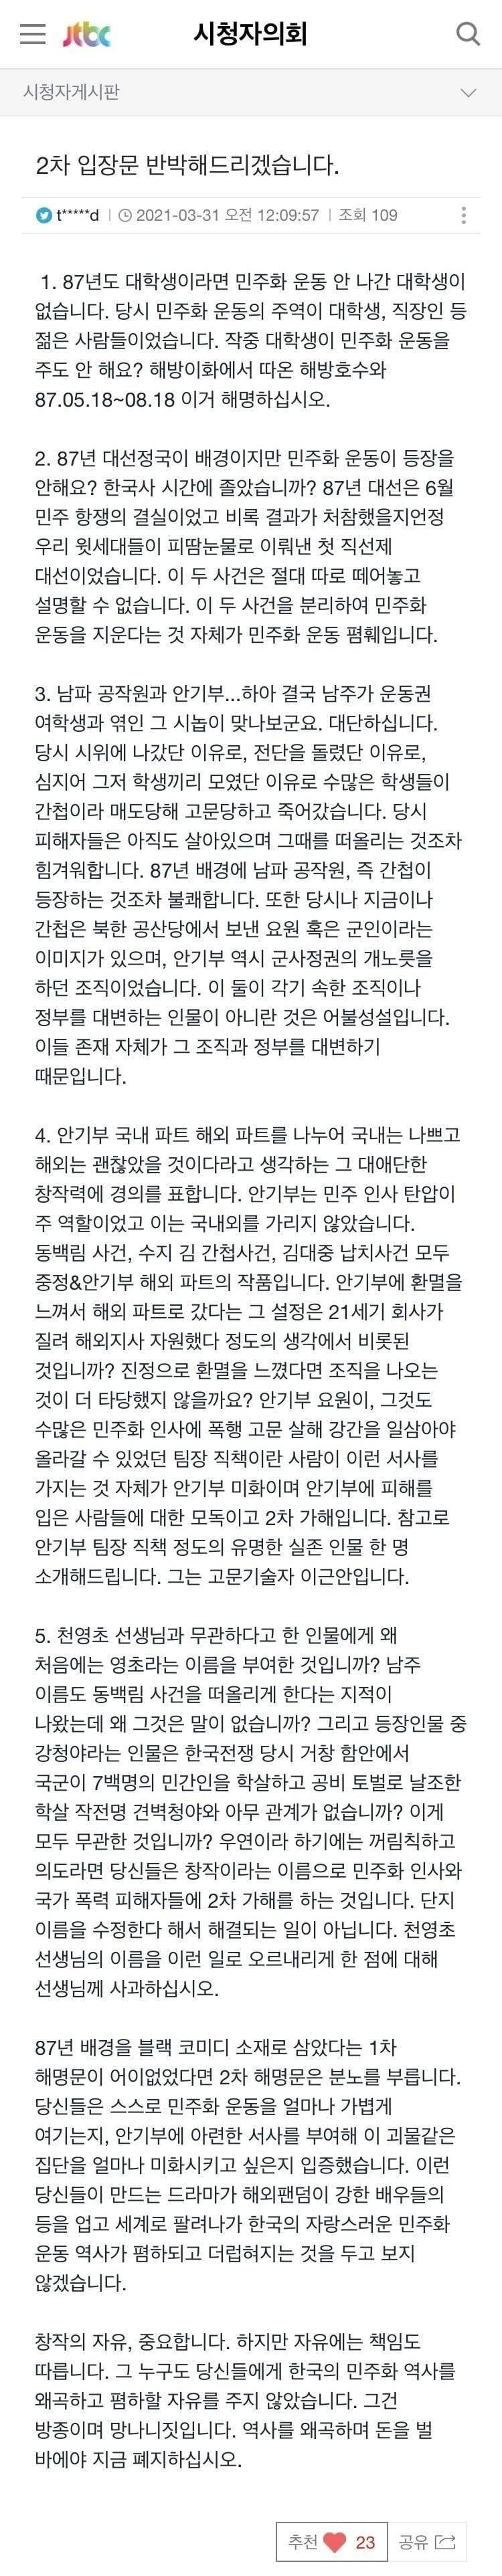 설강화 관련 JTBC 공식 입장문에 대한 누군가가 올린 반박글.jpg | 인스티즈